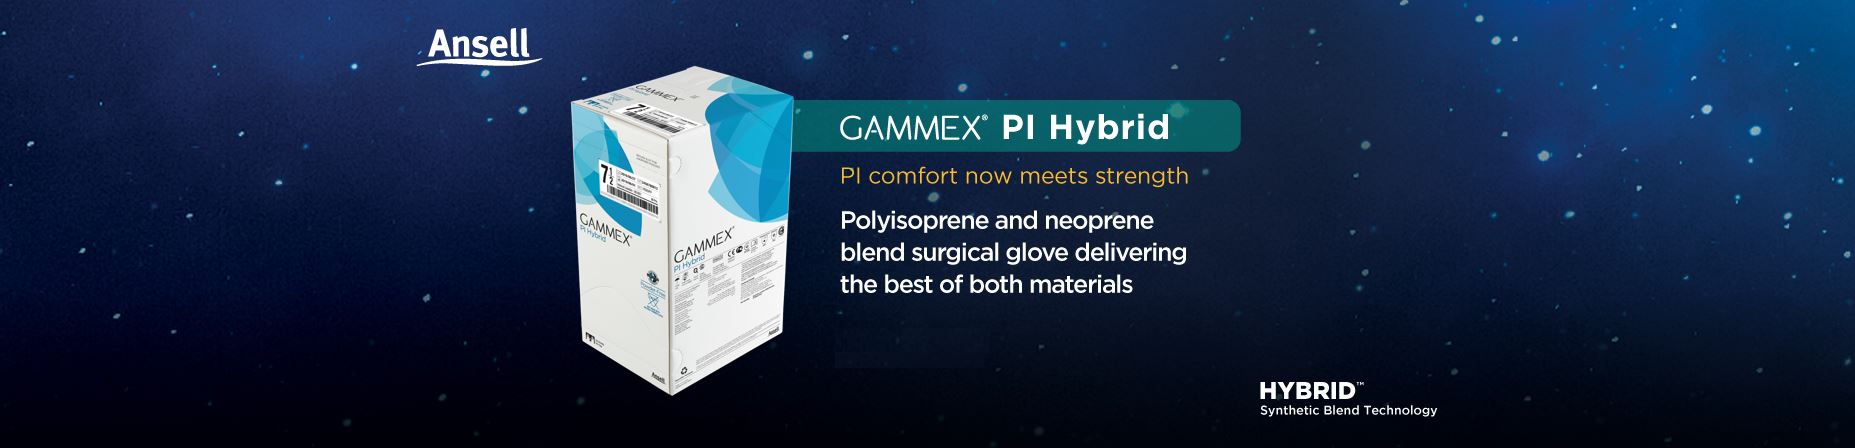 Gammex PI Hybrid